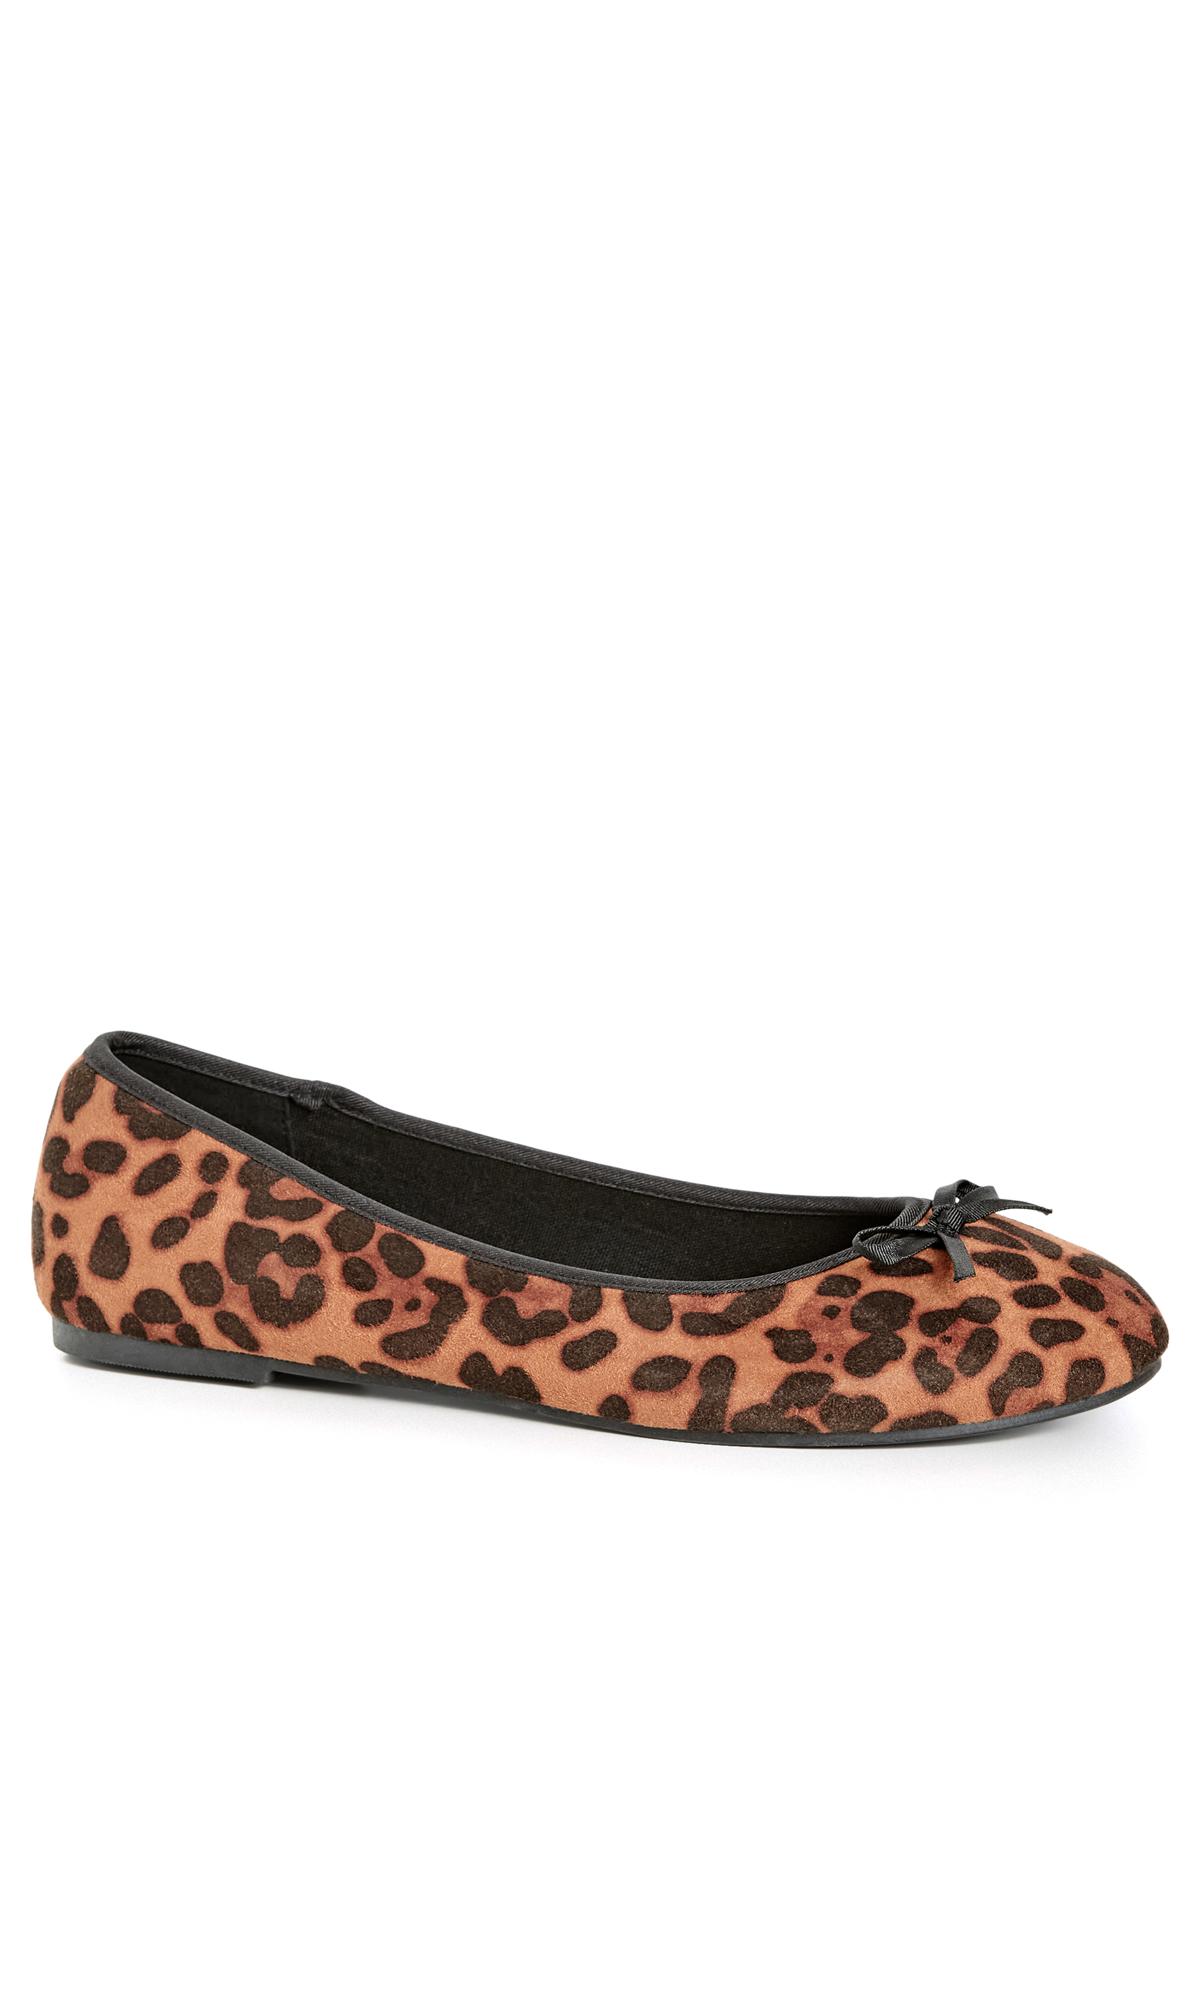 WIDE FIT Ballet Flat - leopard 1